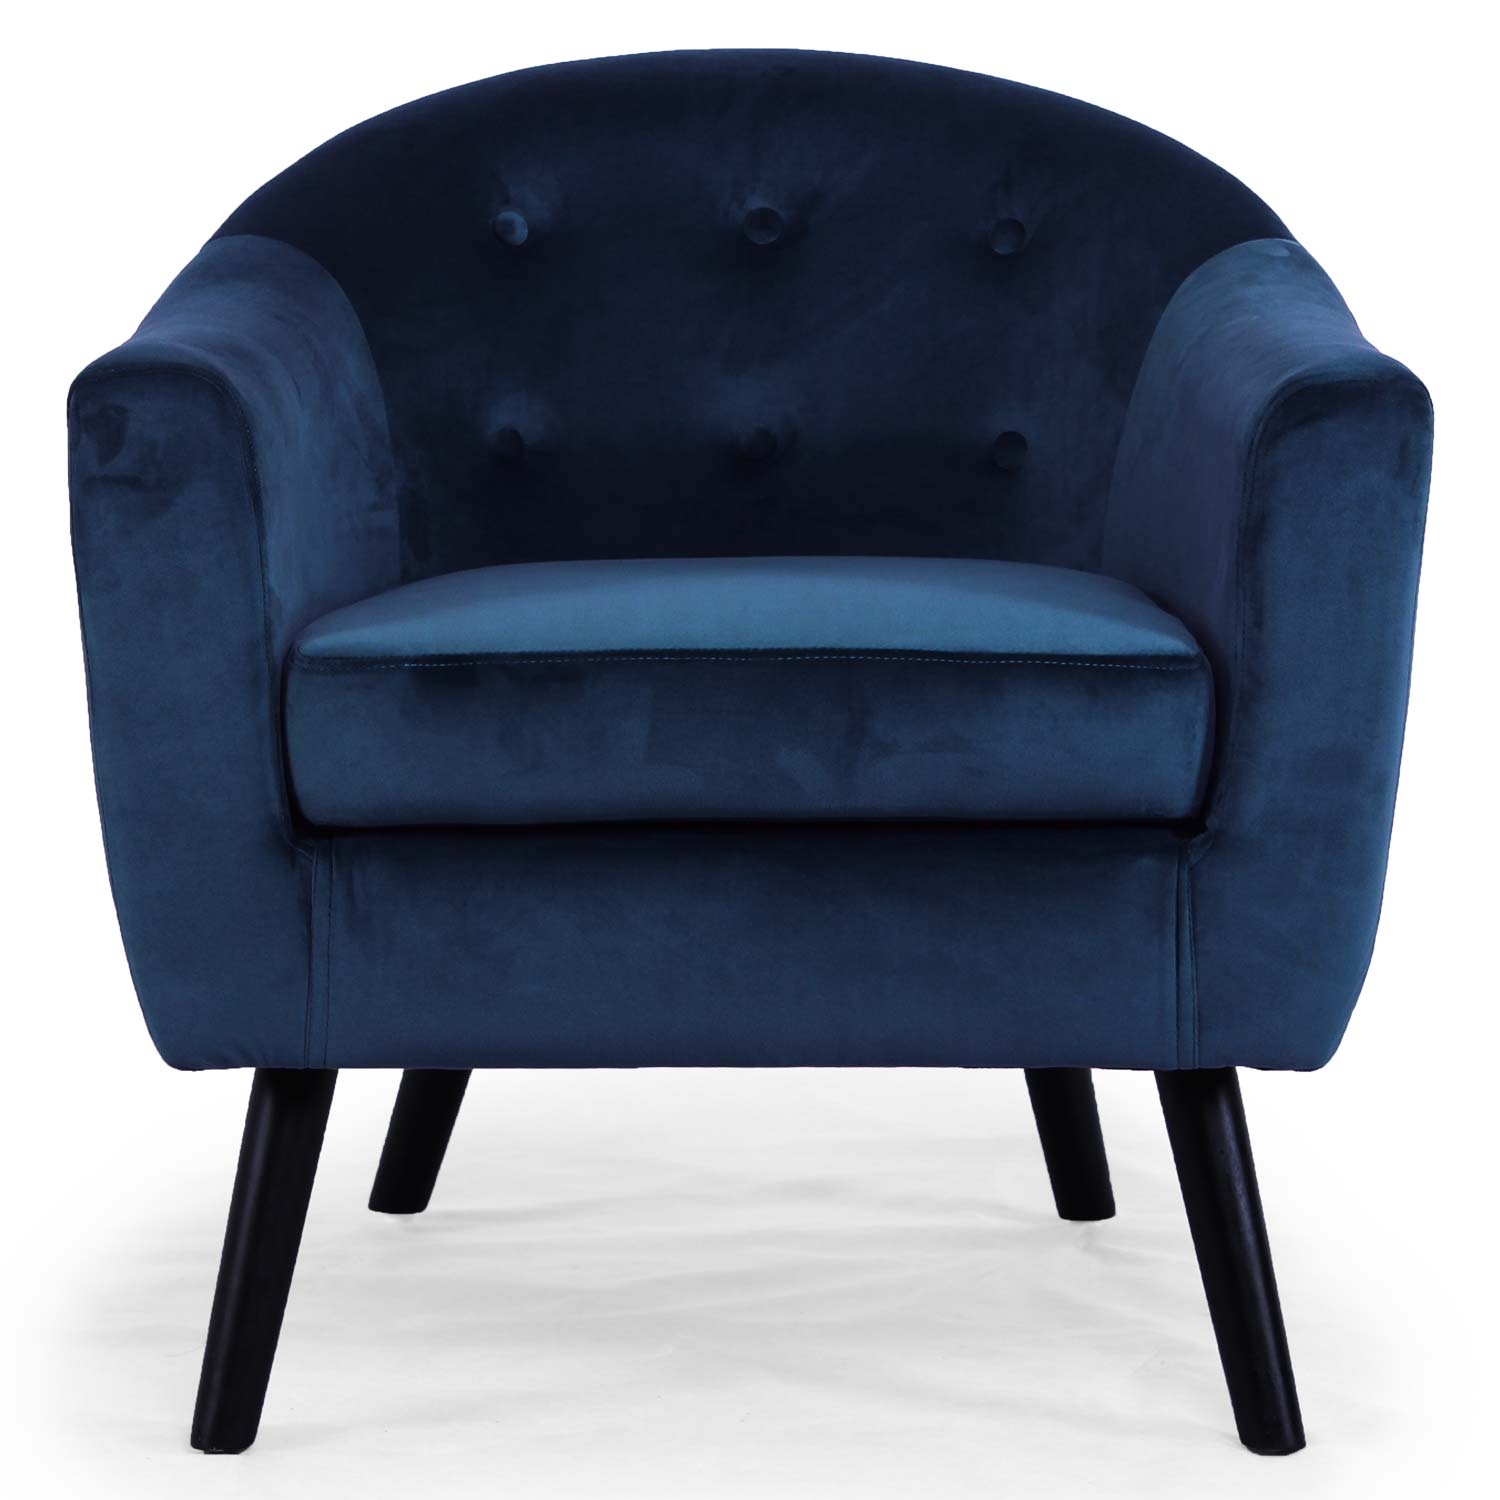 Sofa Savoy 1 plz, terciopelo azul